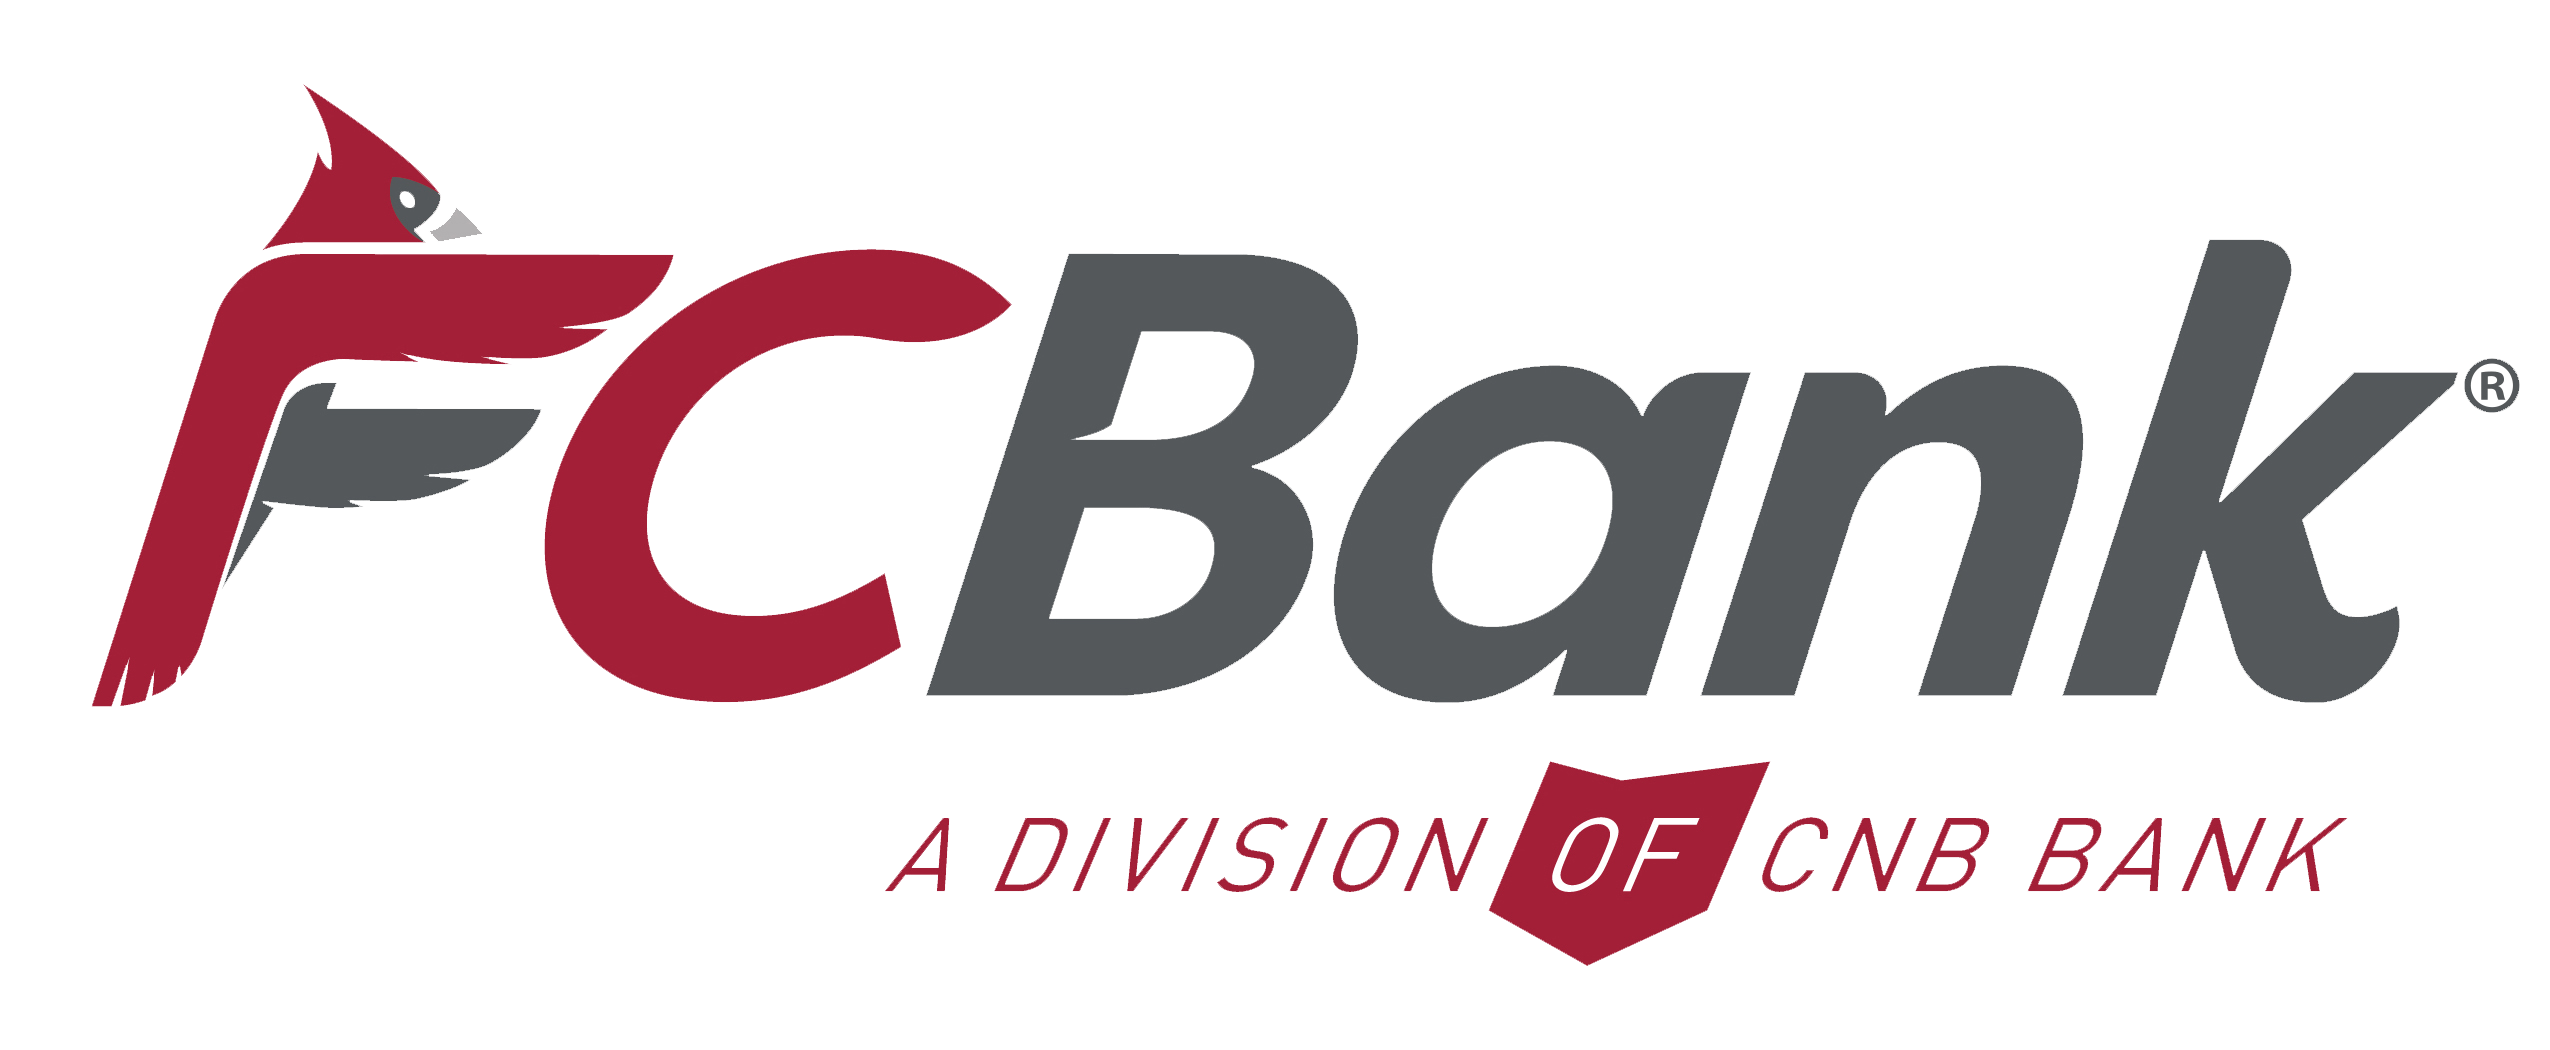 FC_Bank_Main_Logo_2C_vFIN (1)